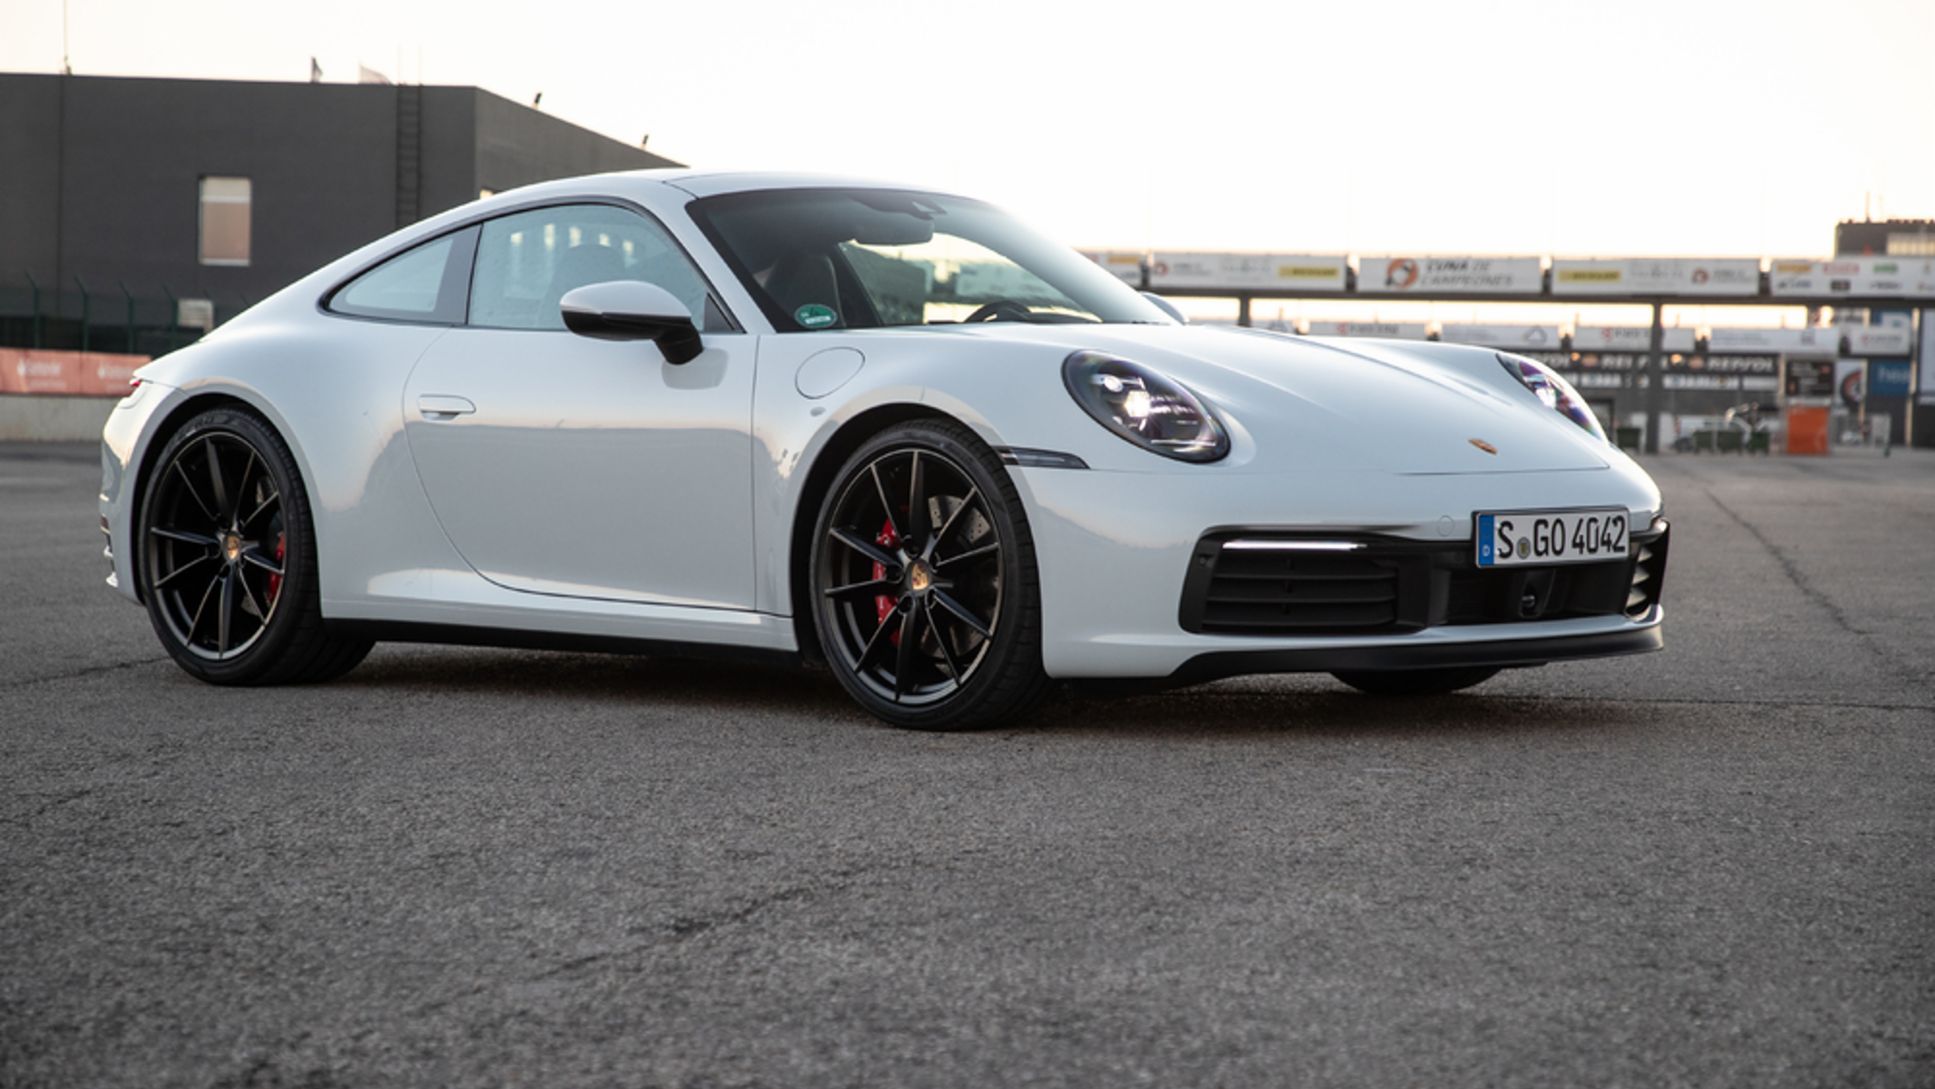 Nuevo Porsche 911 hace su estreno en Chile mezclando modernidad y tradición